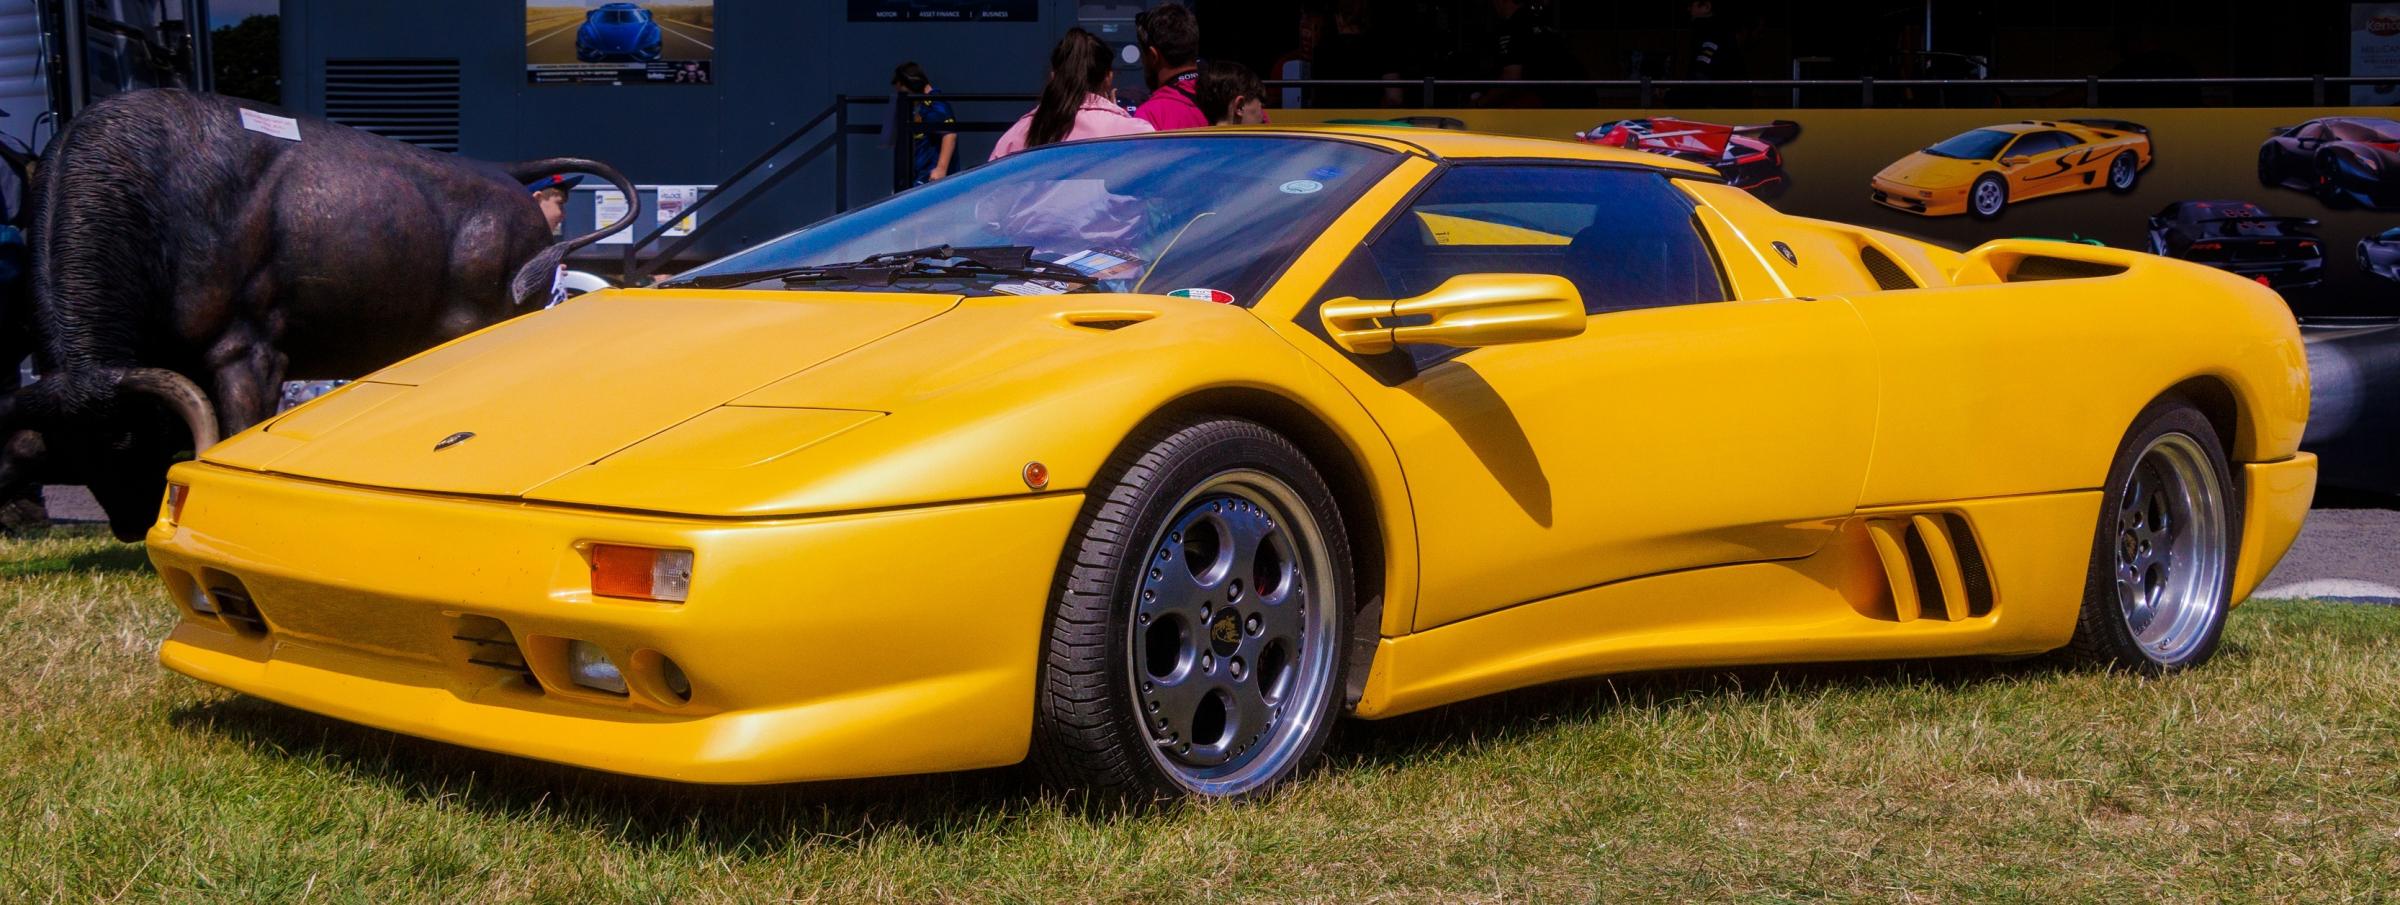 A Lamborghini Diablo in Oulton Park last year by Terry Dixon Jen Tucker